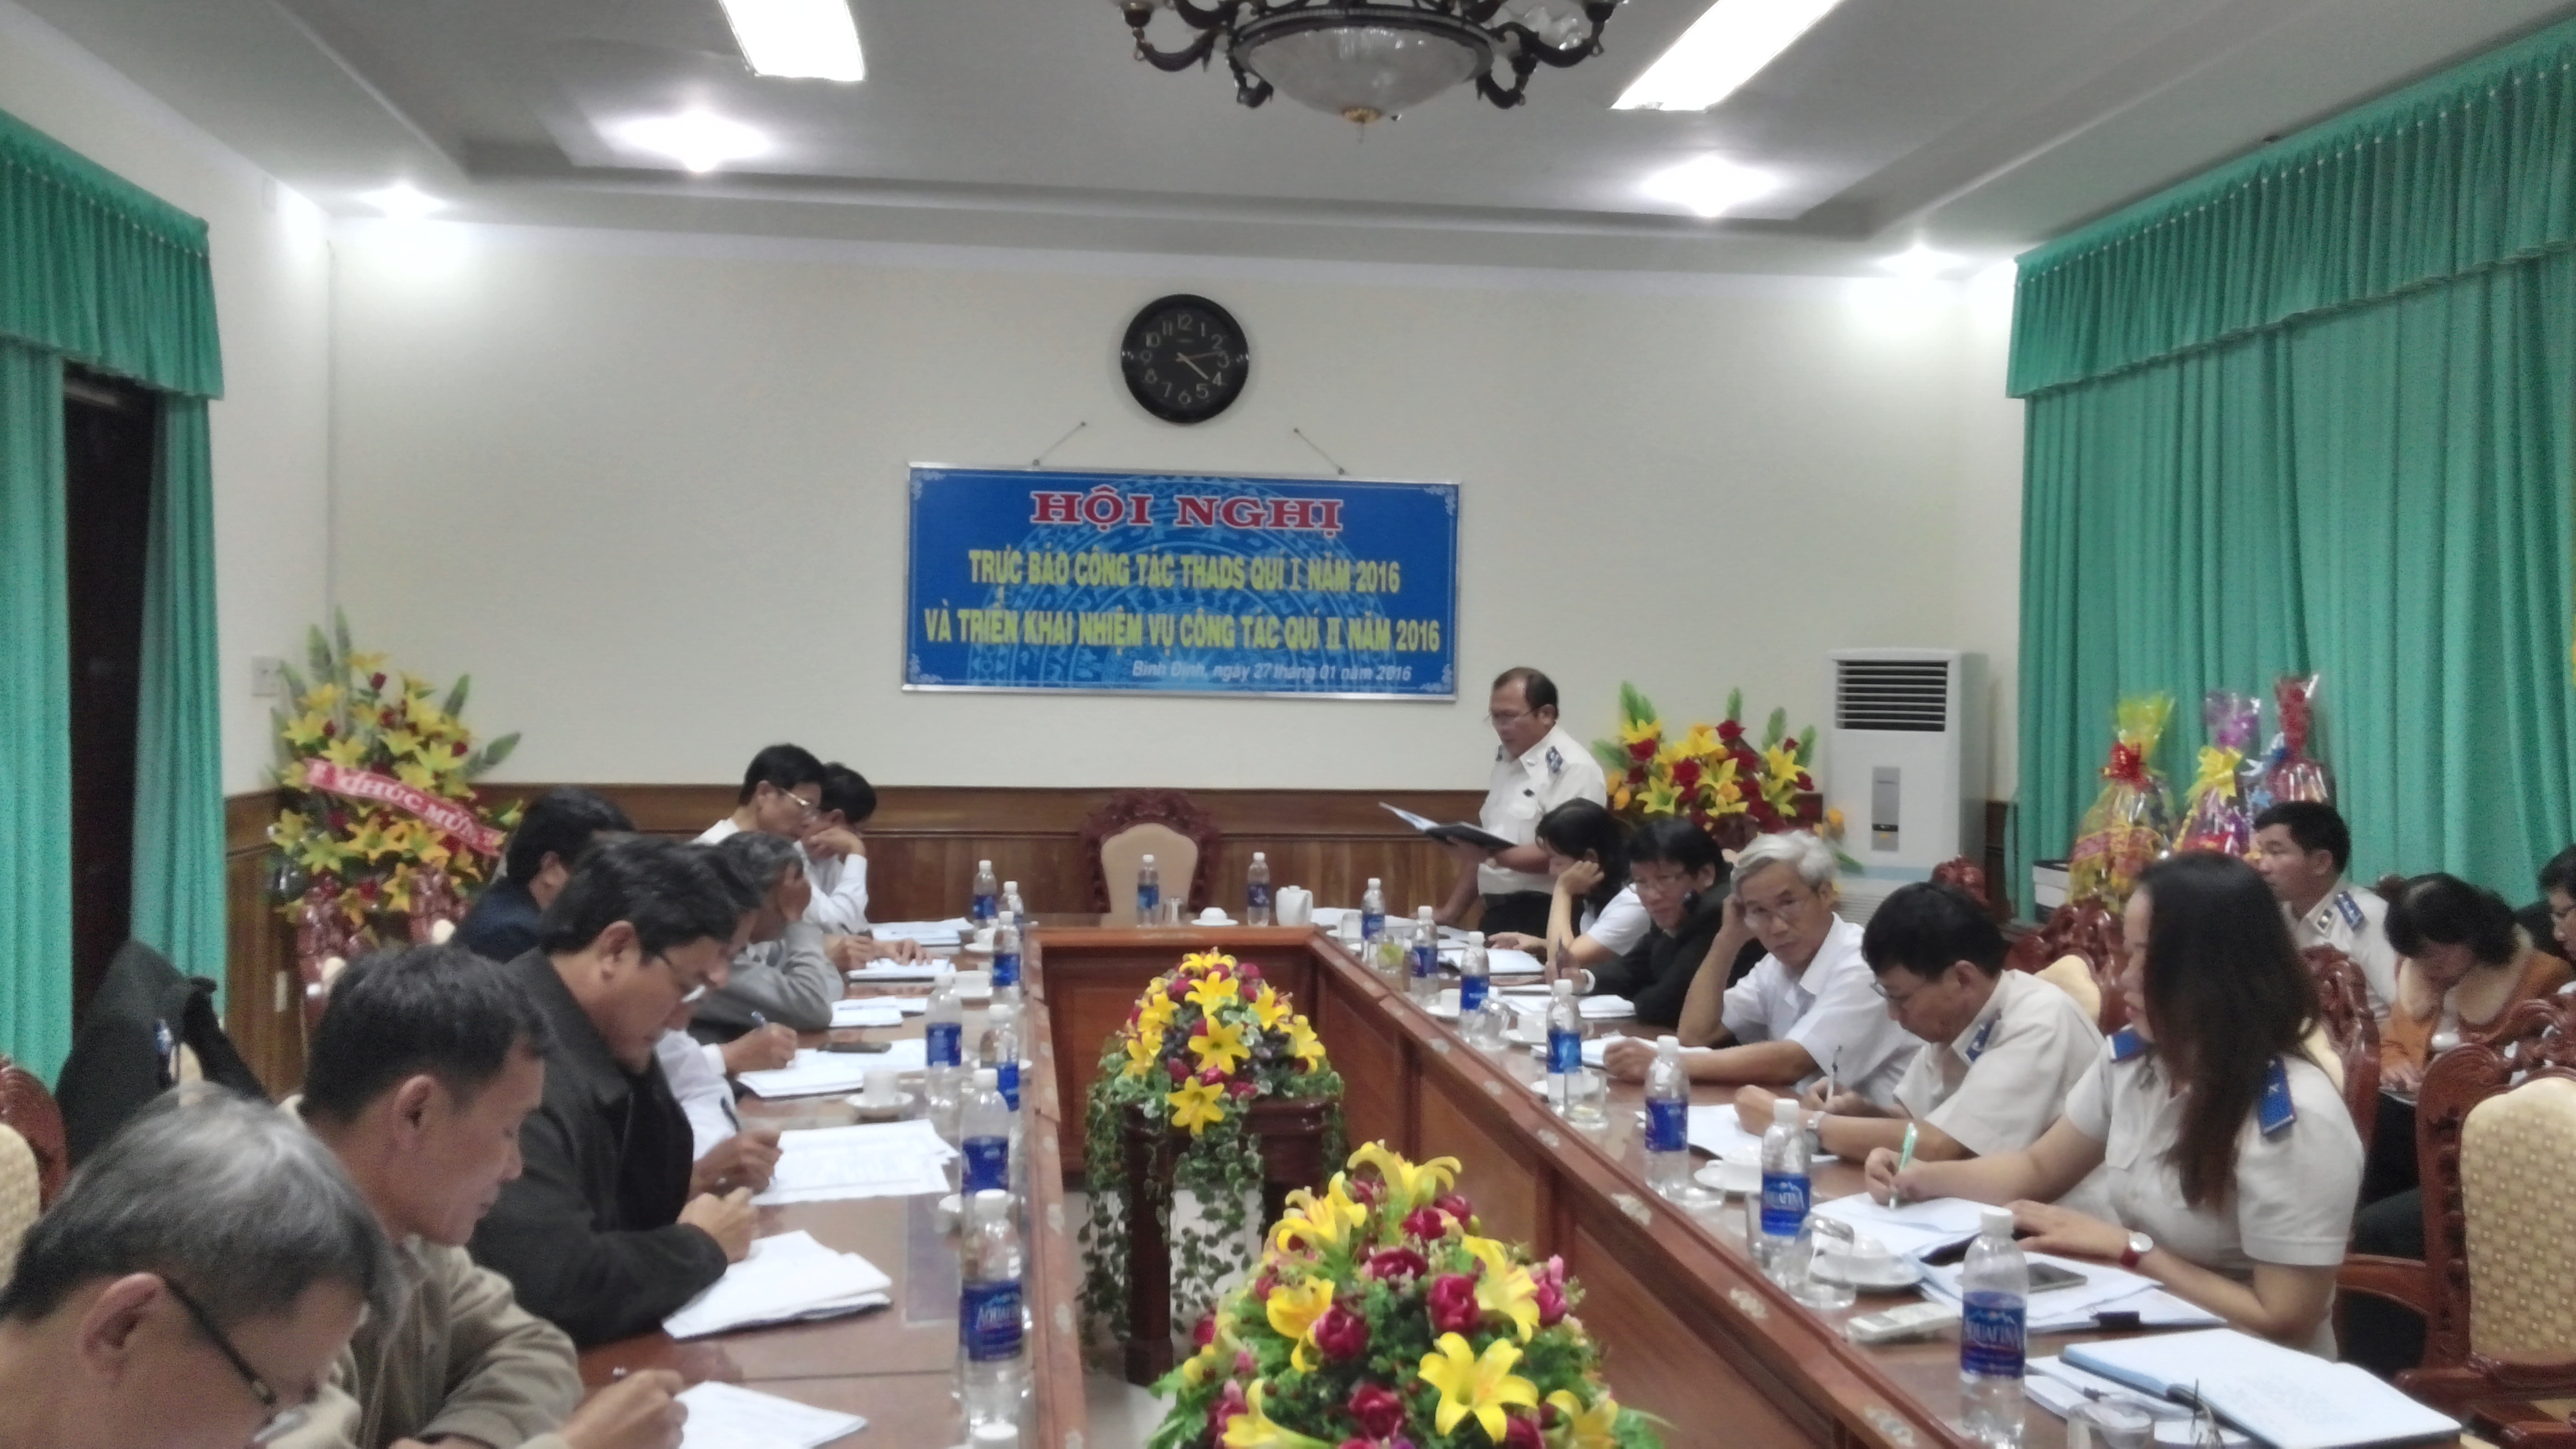 Cục Thi hành án dân sự tỉnh Bình Định đánh giá kết quả công tác Quý I/2016 và triển khai nhiệm vụ công tác Quý II/2016